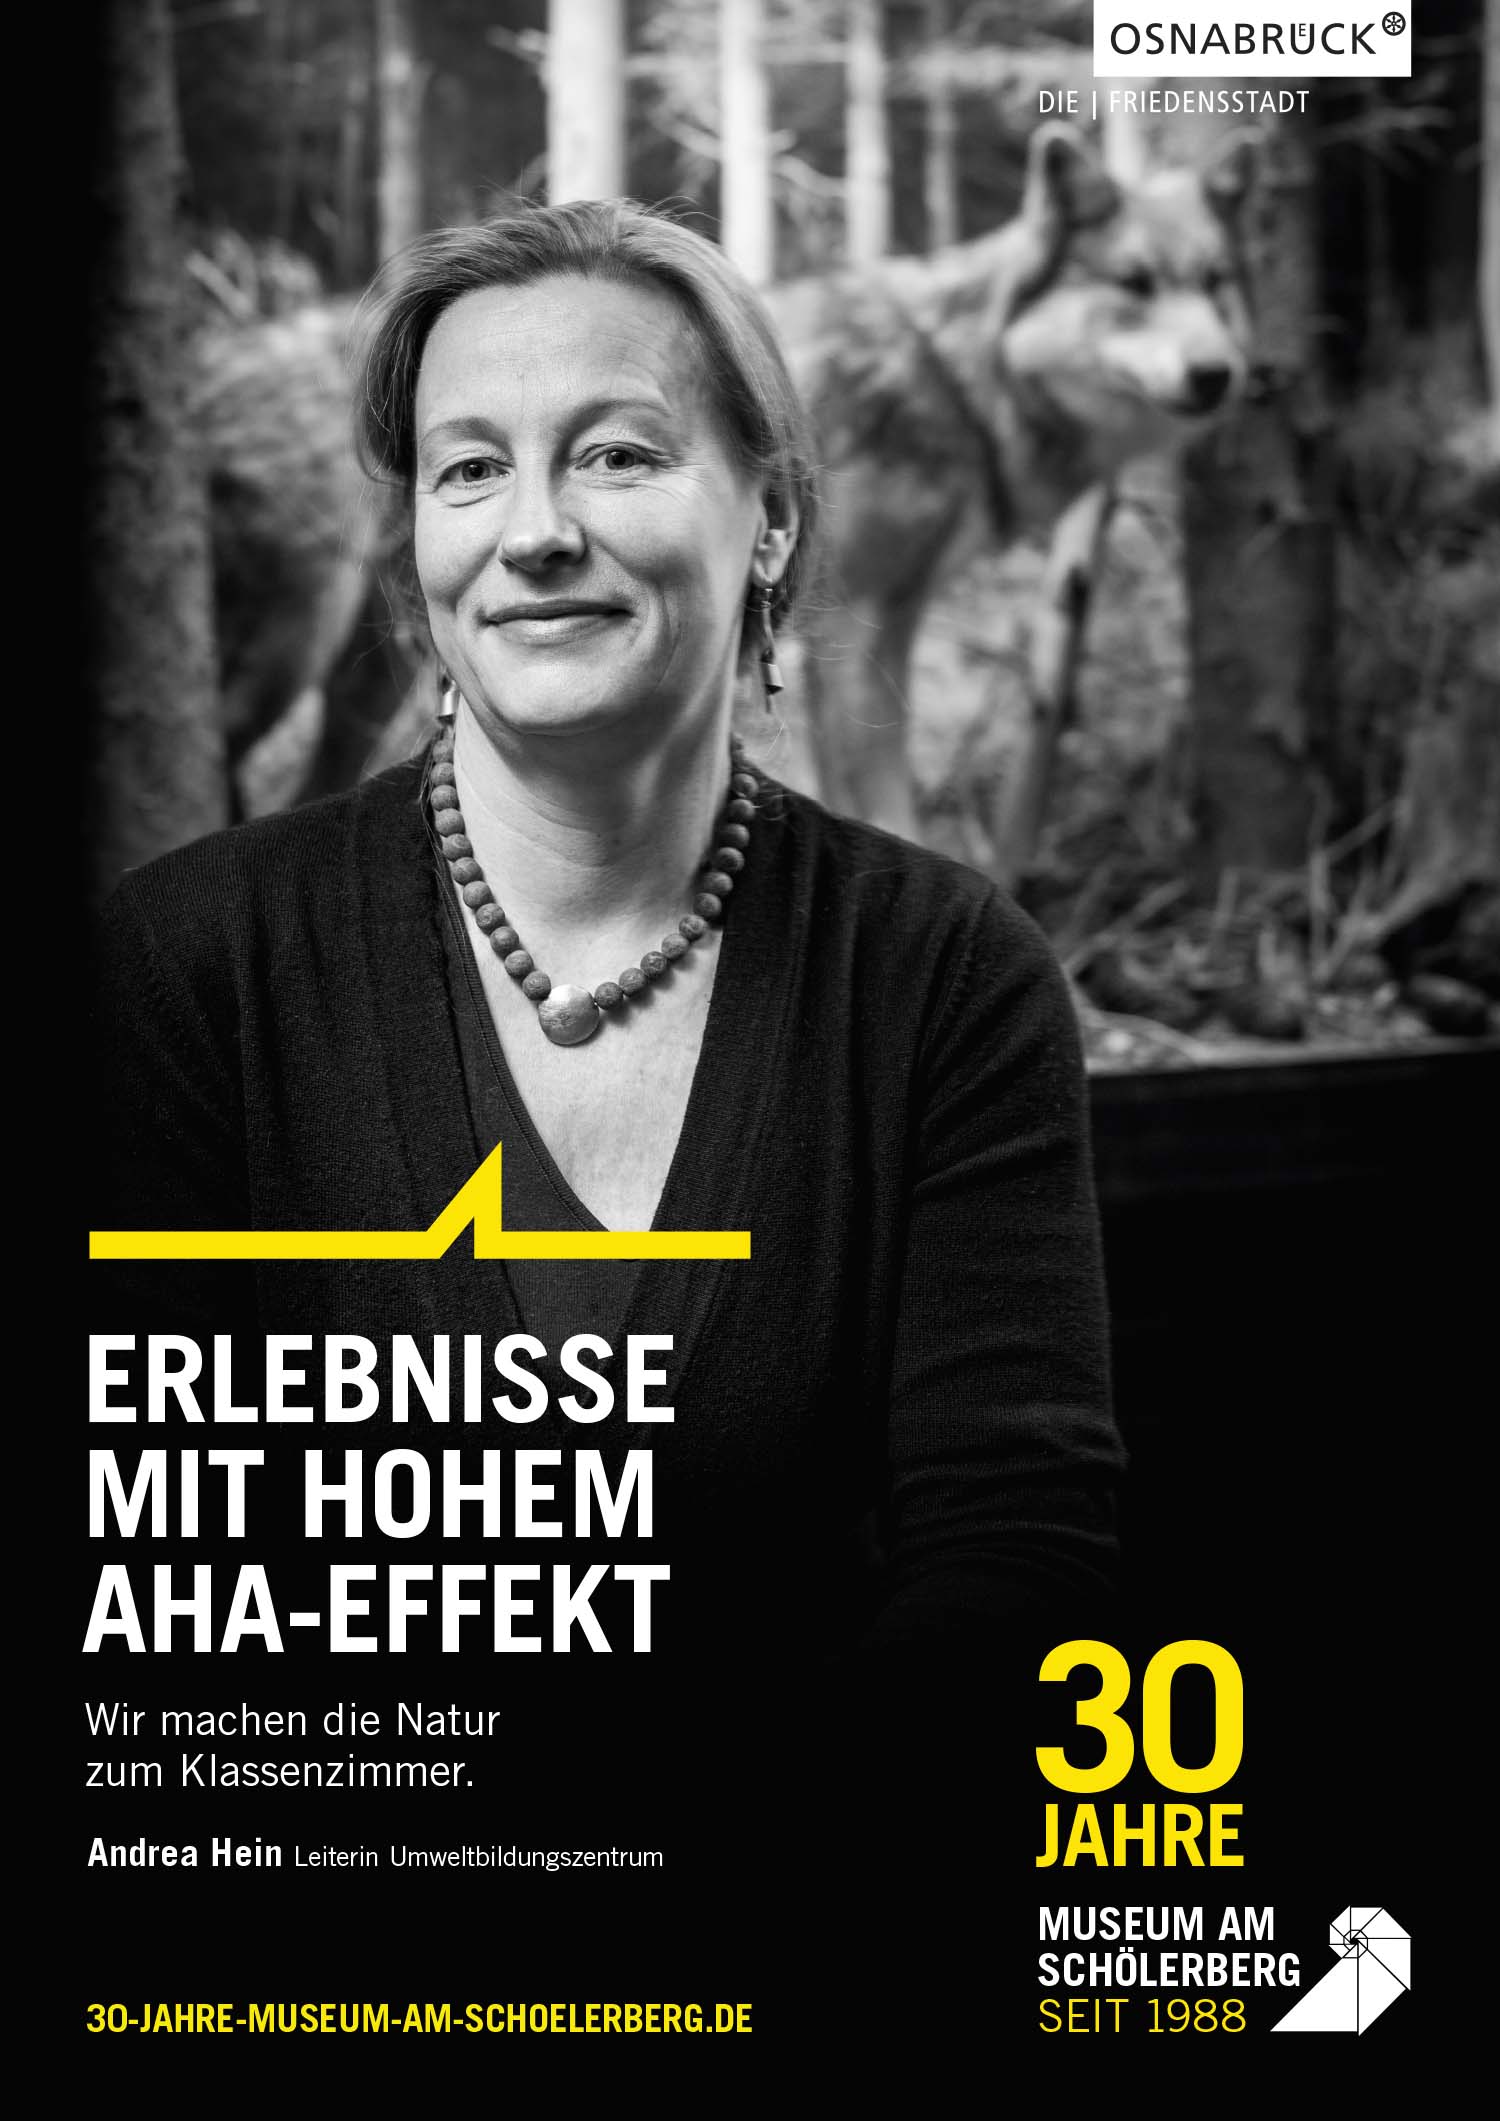 Andrea Hein vom Museum am Schölerberg. Sie leitet das Umweltbildungszentrum.